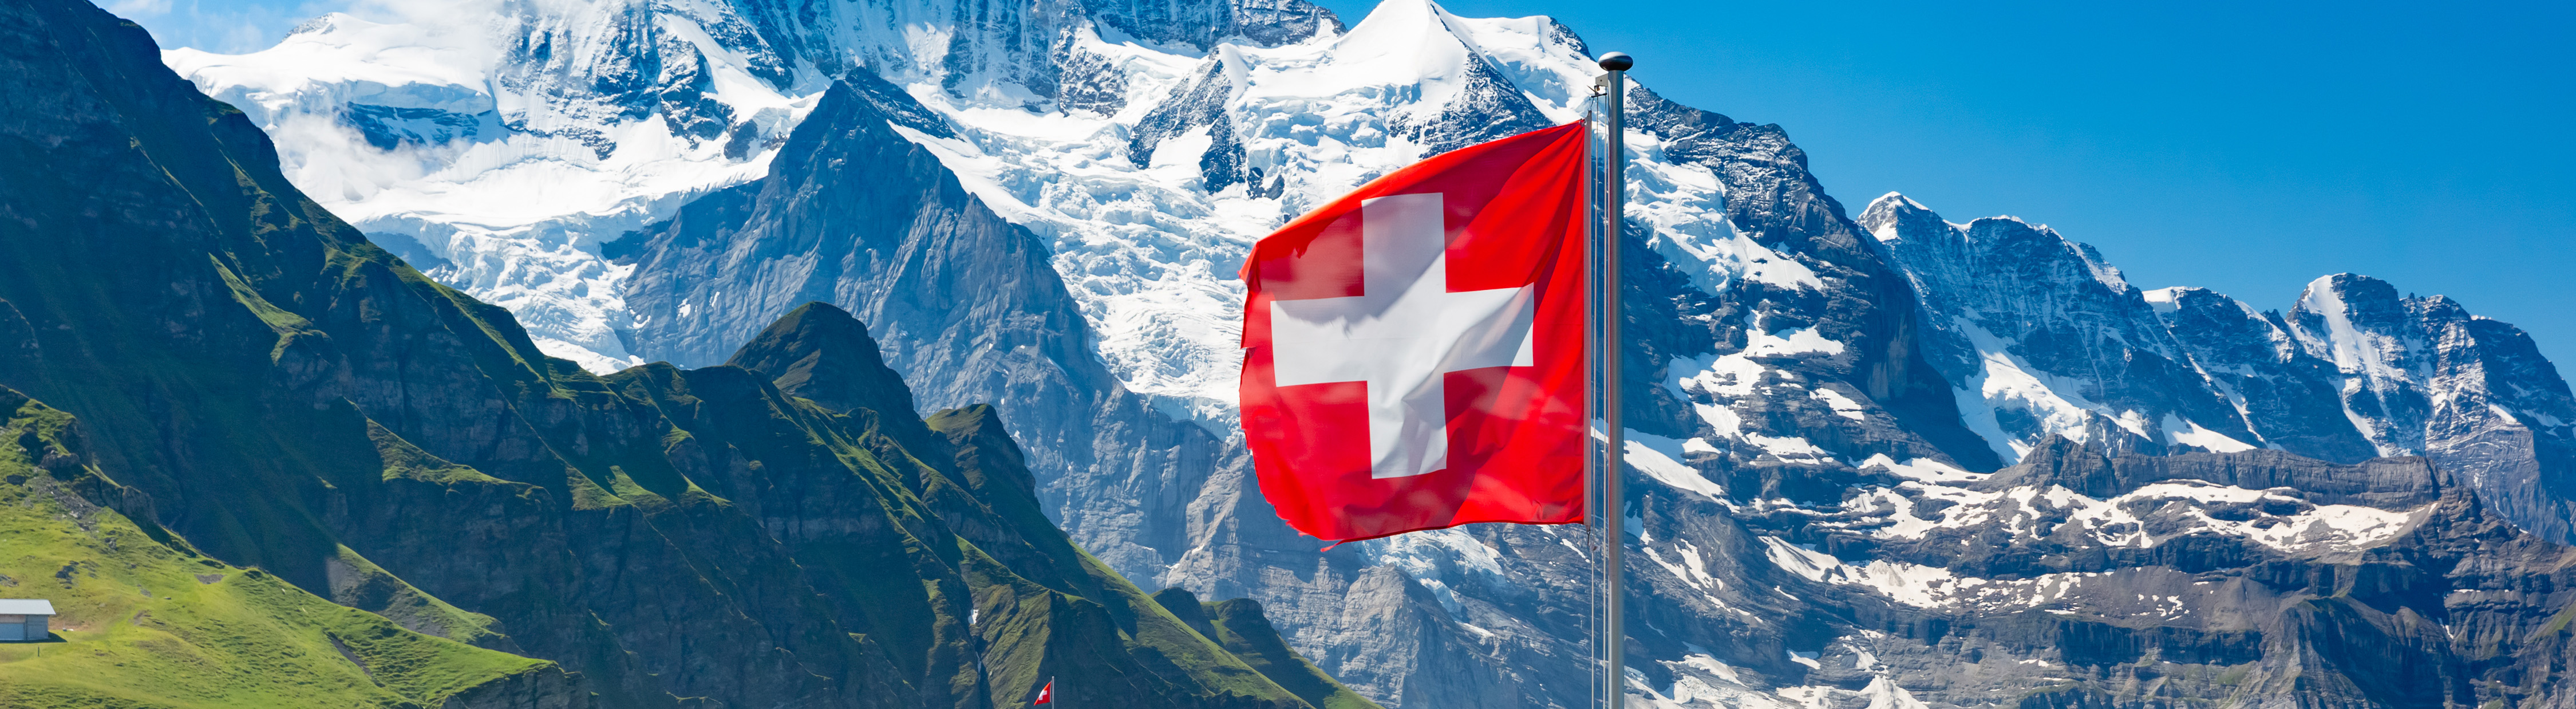 Berichtssaison: Schweizer Unternehmen legen Zahlen vor -Teil 2